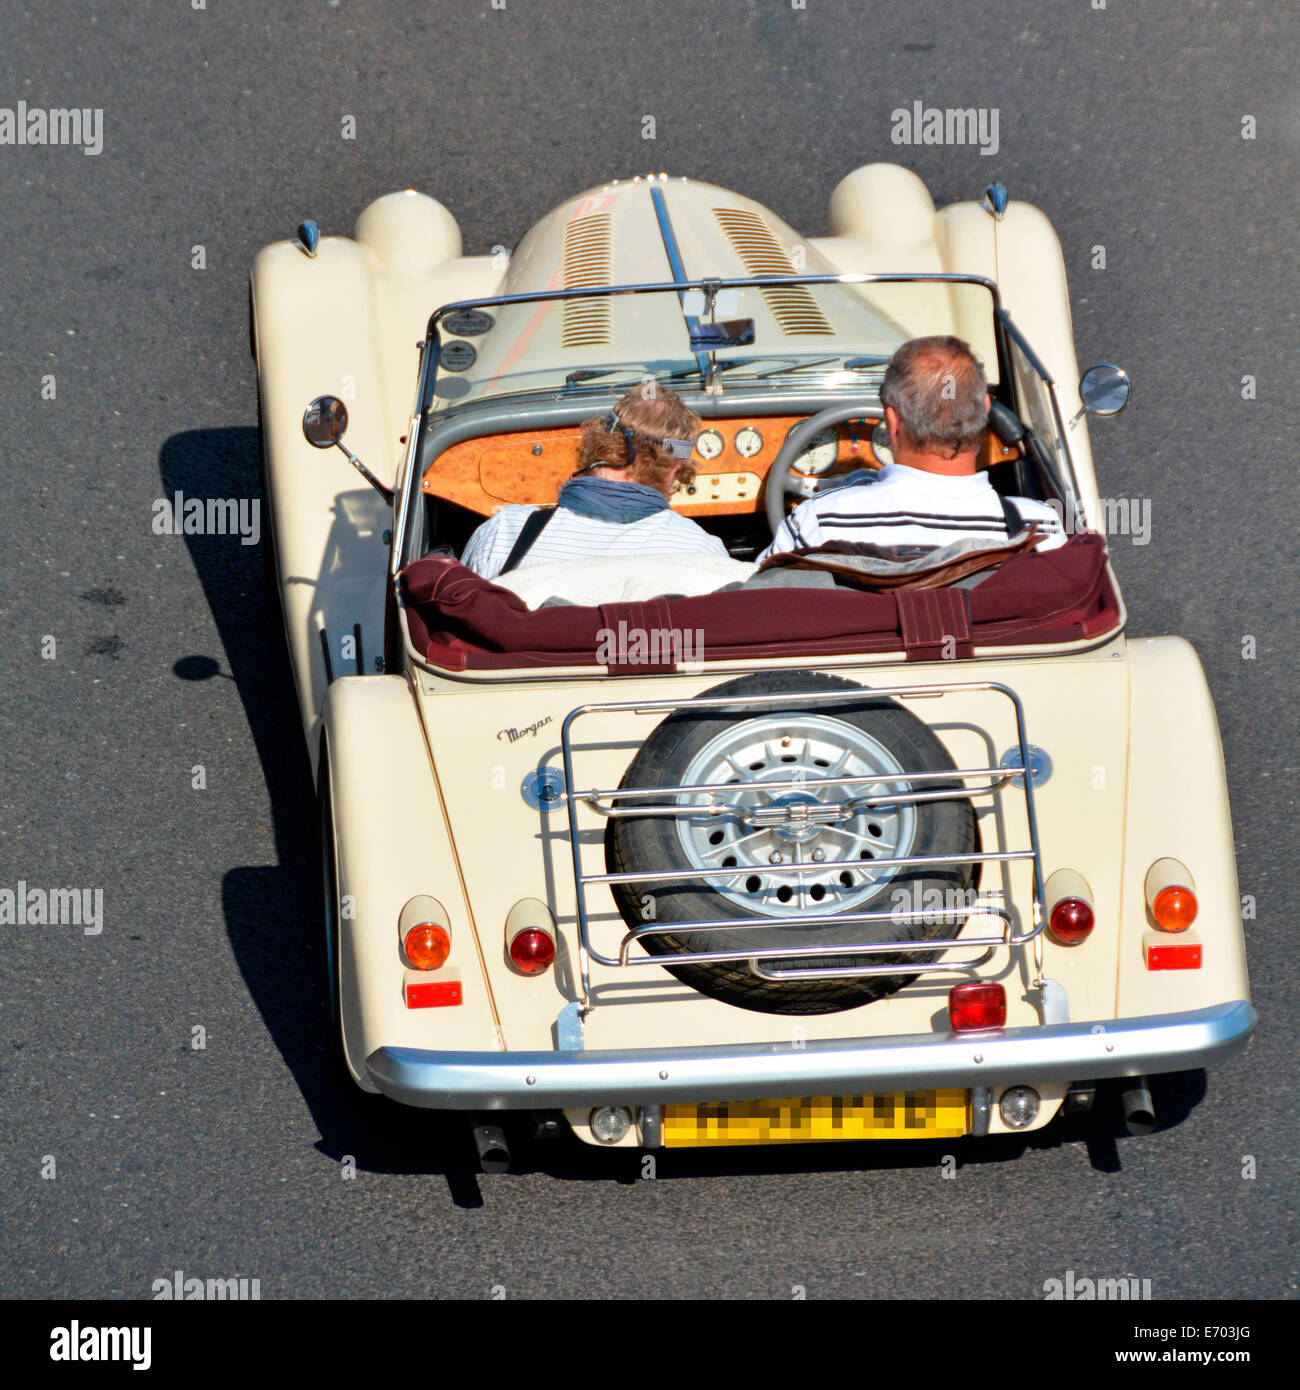 Regardant vers le bas sur un couple voyageant dans une Morgan cabriolet décapotable à toit ouvert Voiture autoroute M25 Essex England UK Banque D'Images